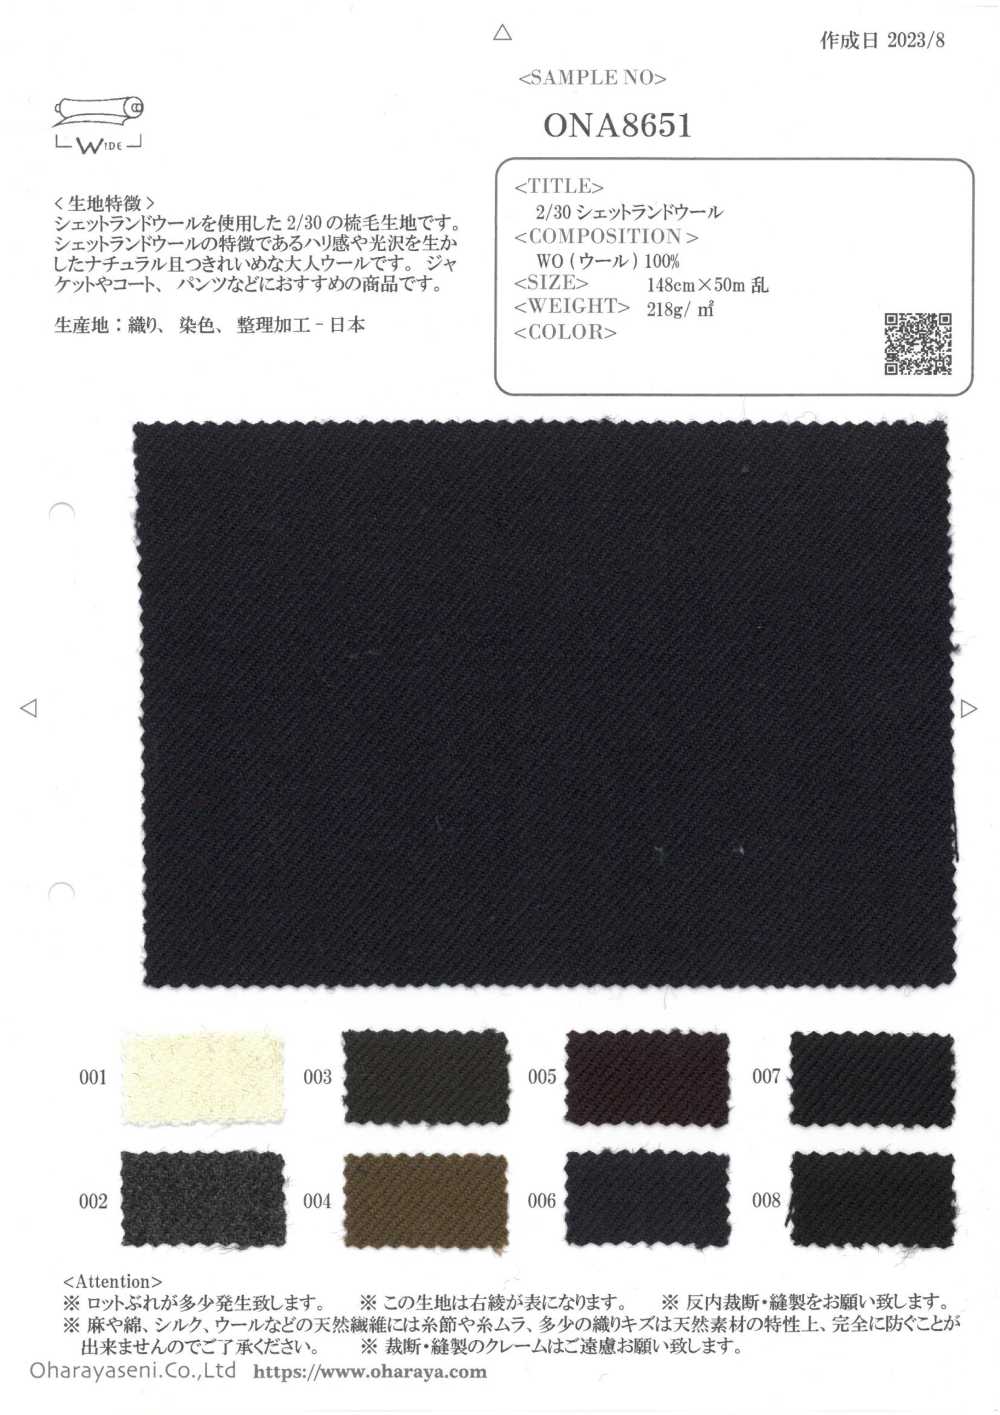 ONA8651 2/30 Shetland Wool[Textile / Fabric] Oharayaseni